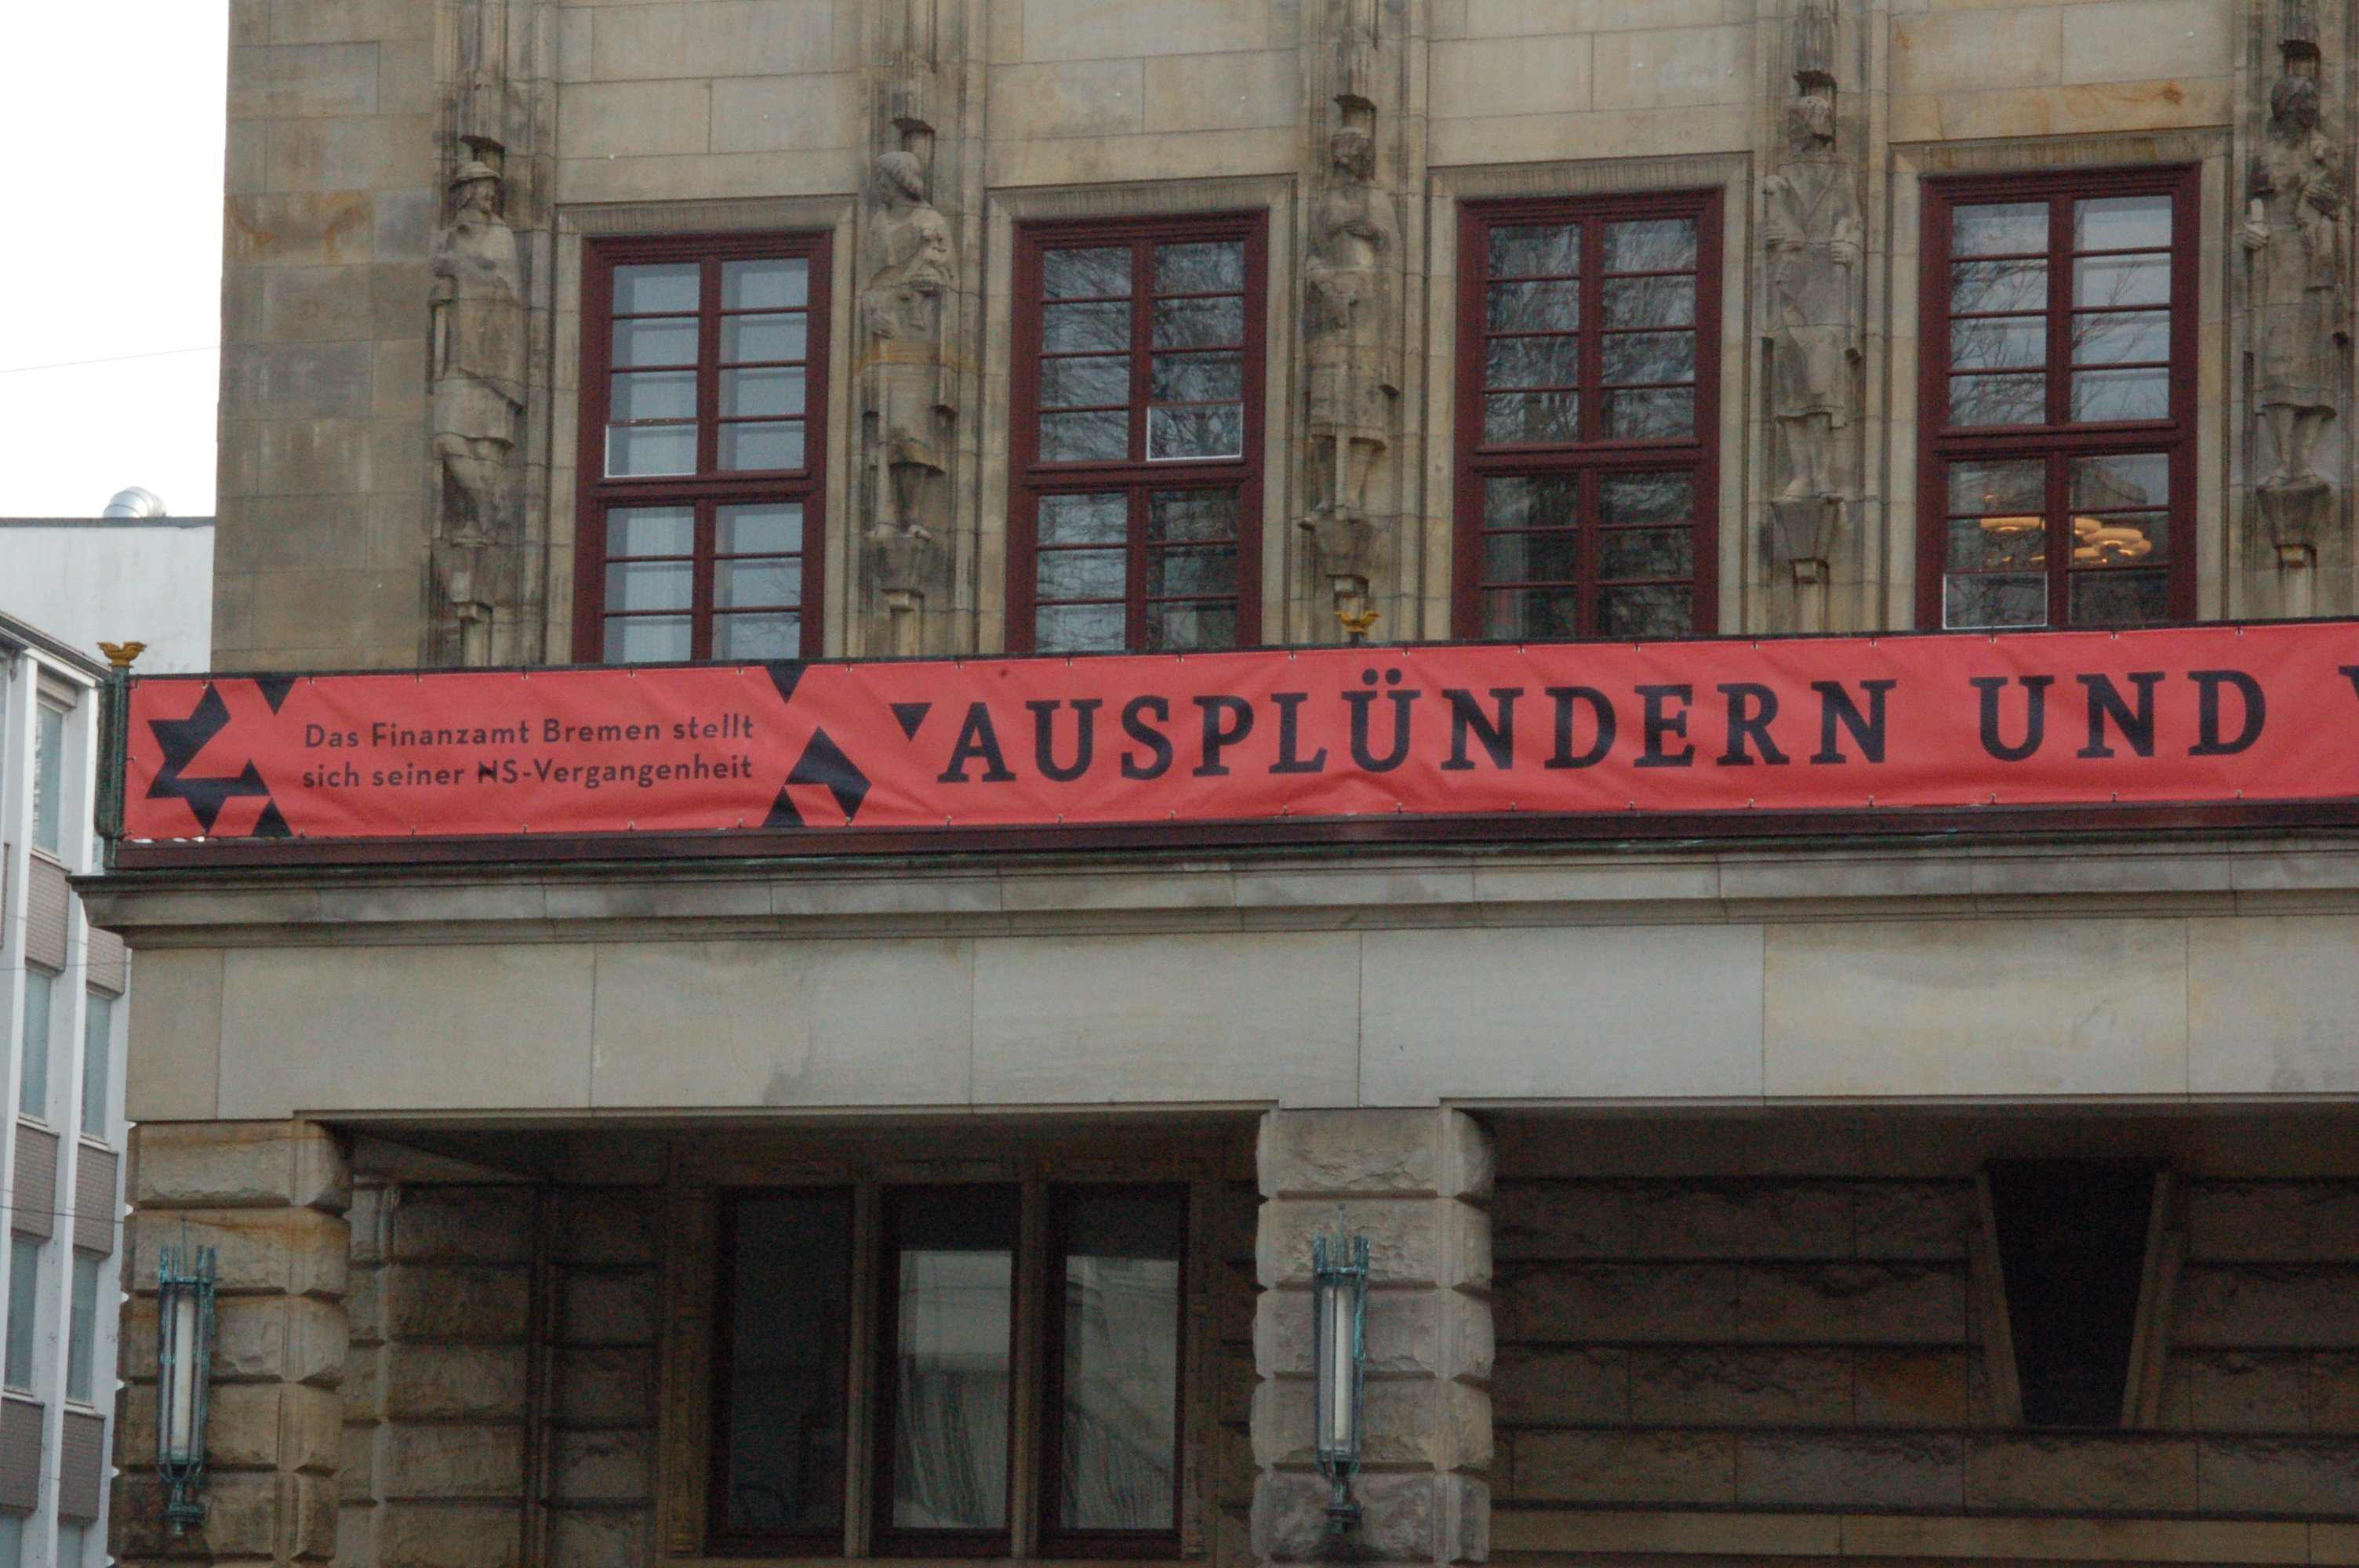 <p>Das Bild zeigt den Haupteingang des Bremer Finanzamts. Über den Türen ist ein roter Banner angebracht mit der Aufschrift: Ausplündern und...-Das Finanzamt Bremen stellt sich seiner NS-Vergangenheit.</p>